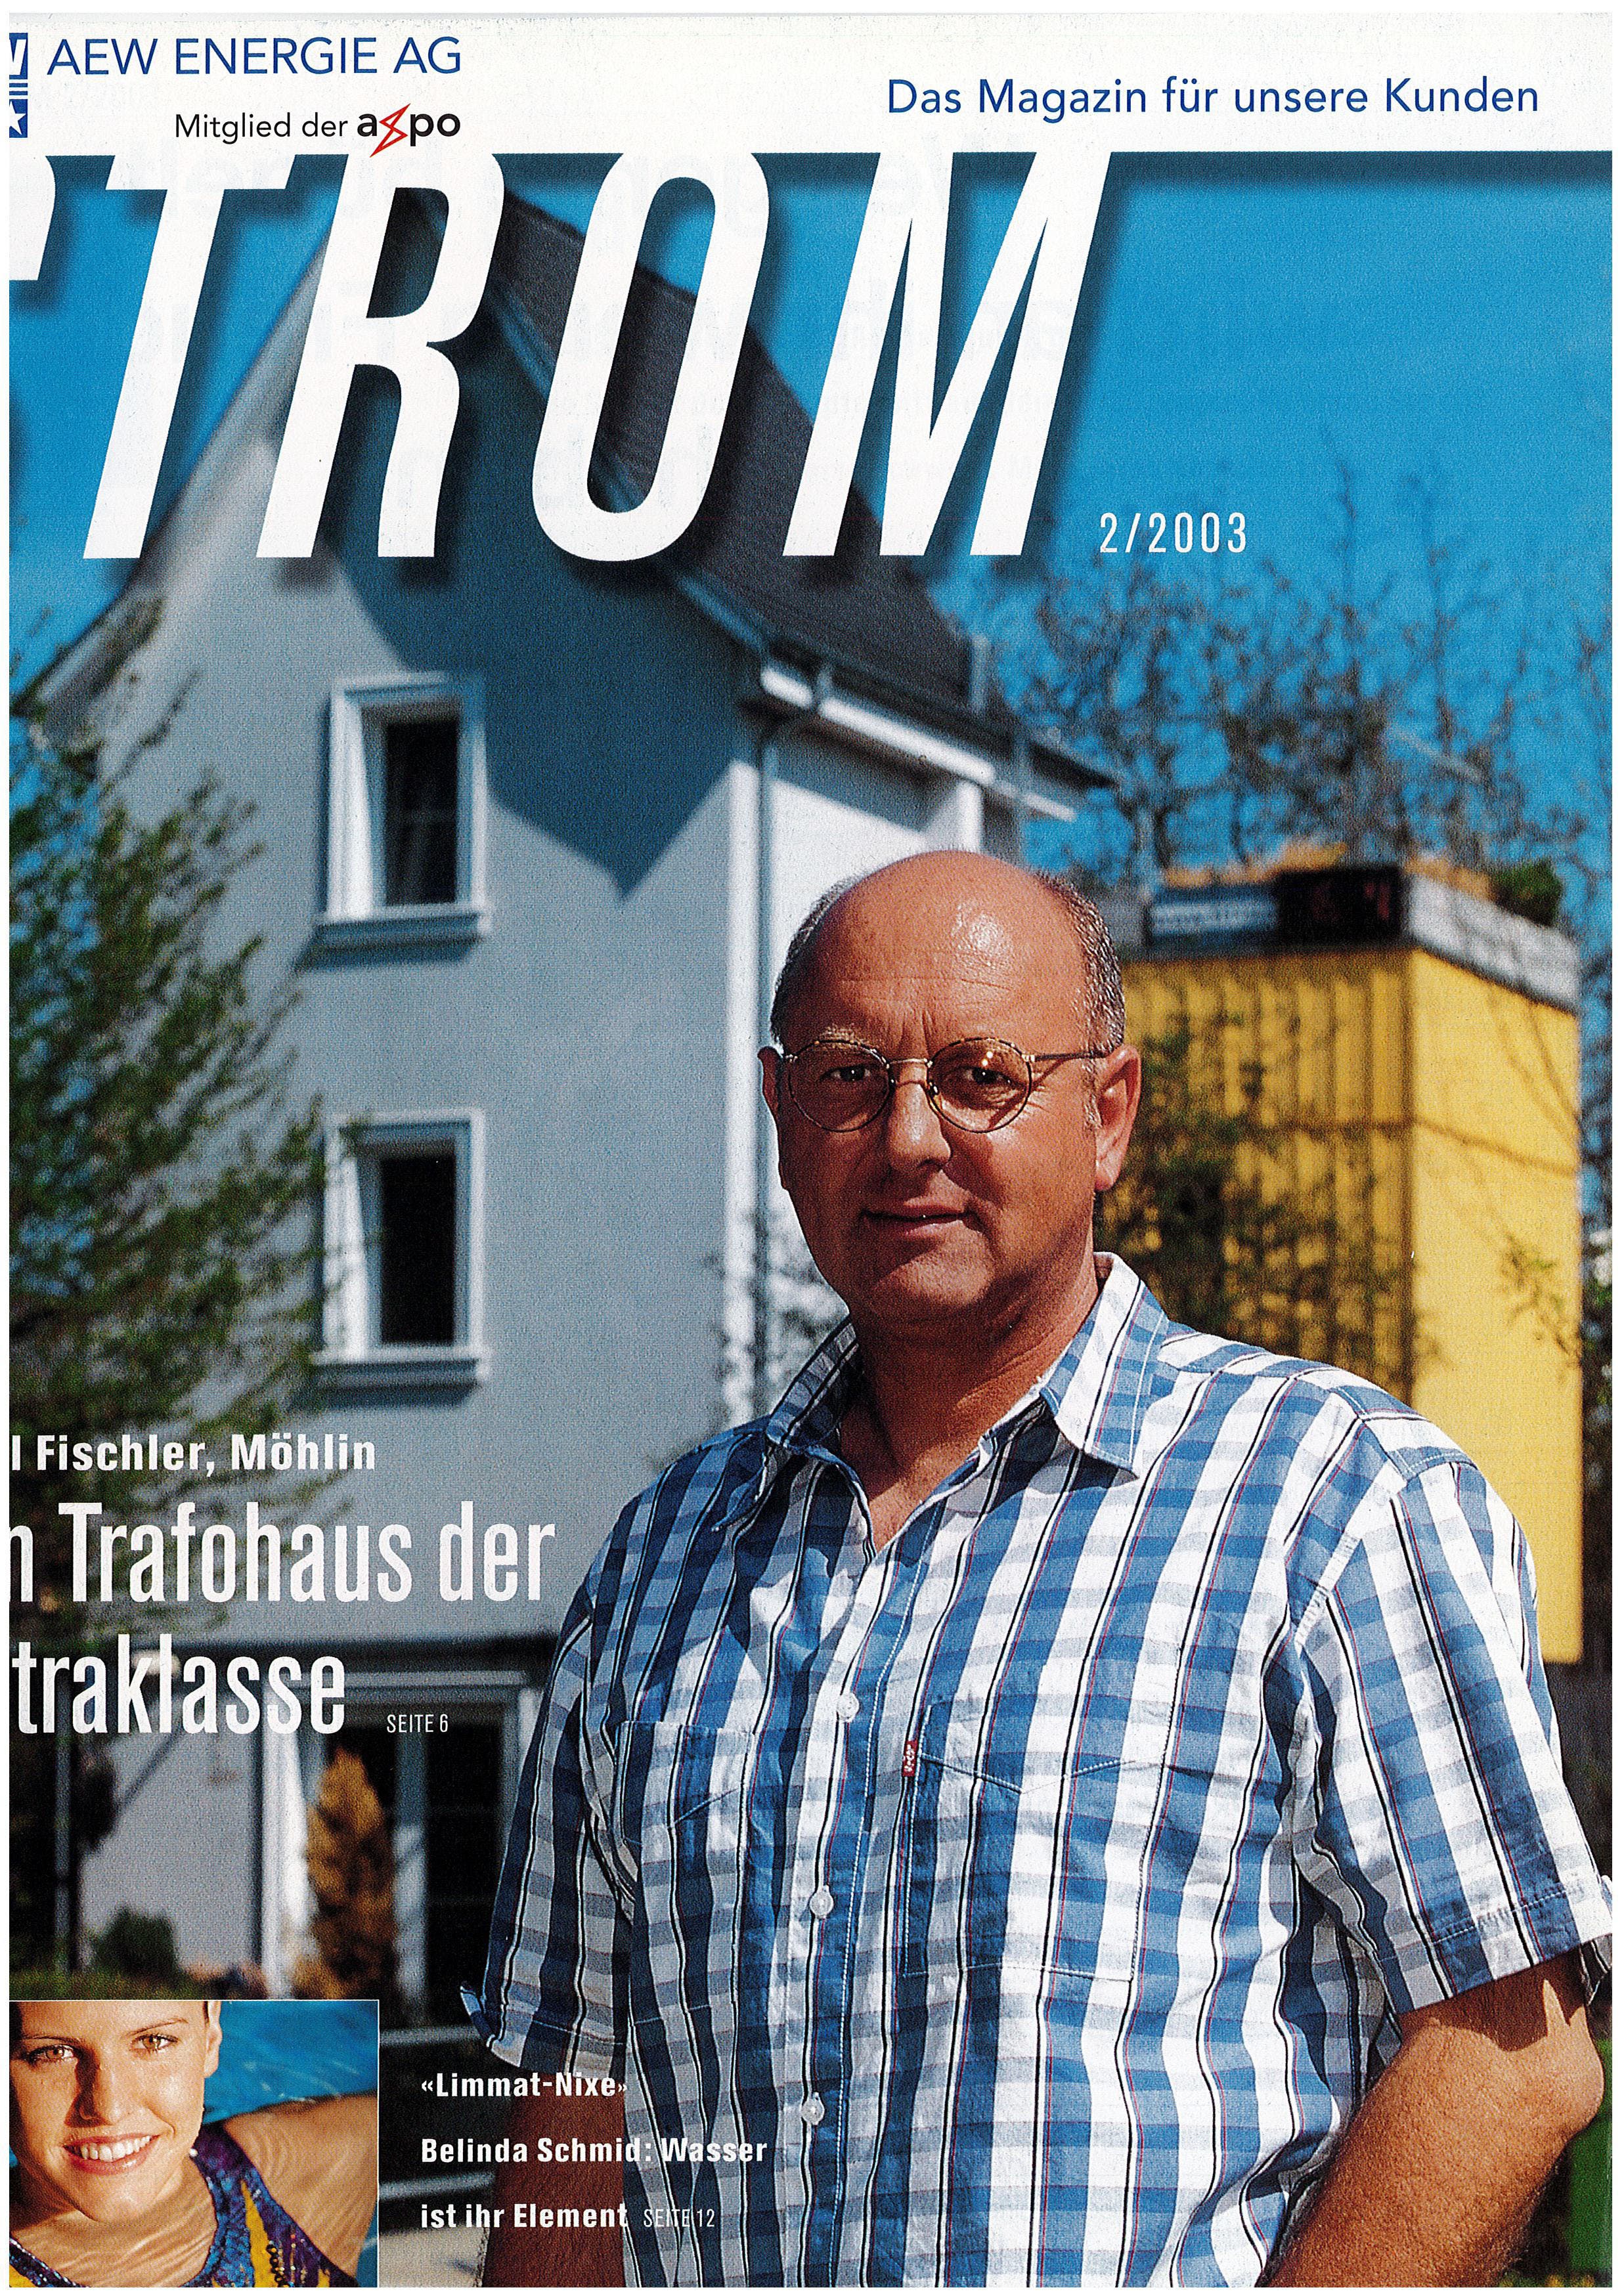 Paul Fischler auf der Frontseite des AEW-Kundenmagazins, 2000.